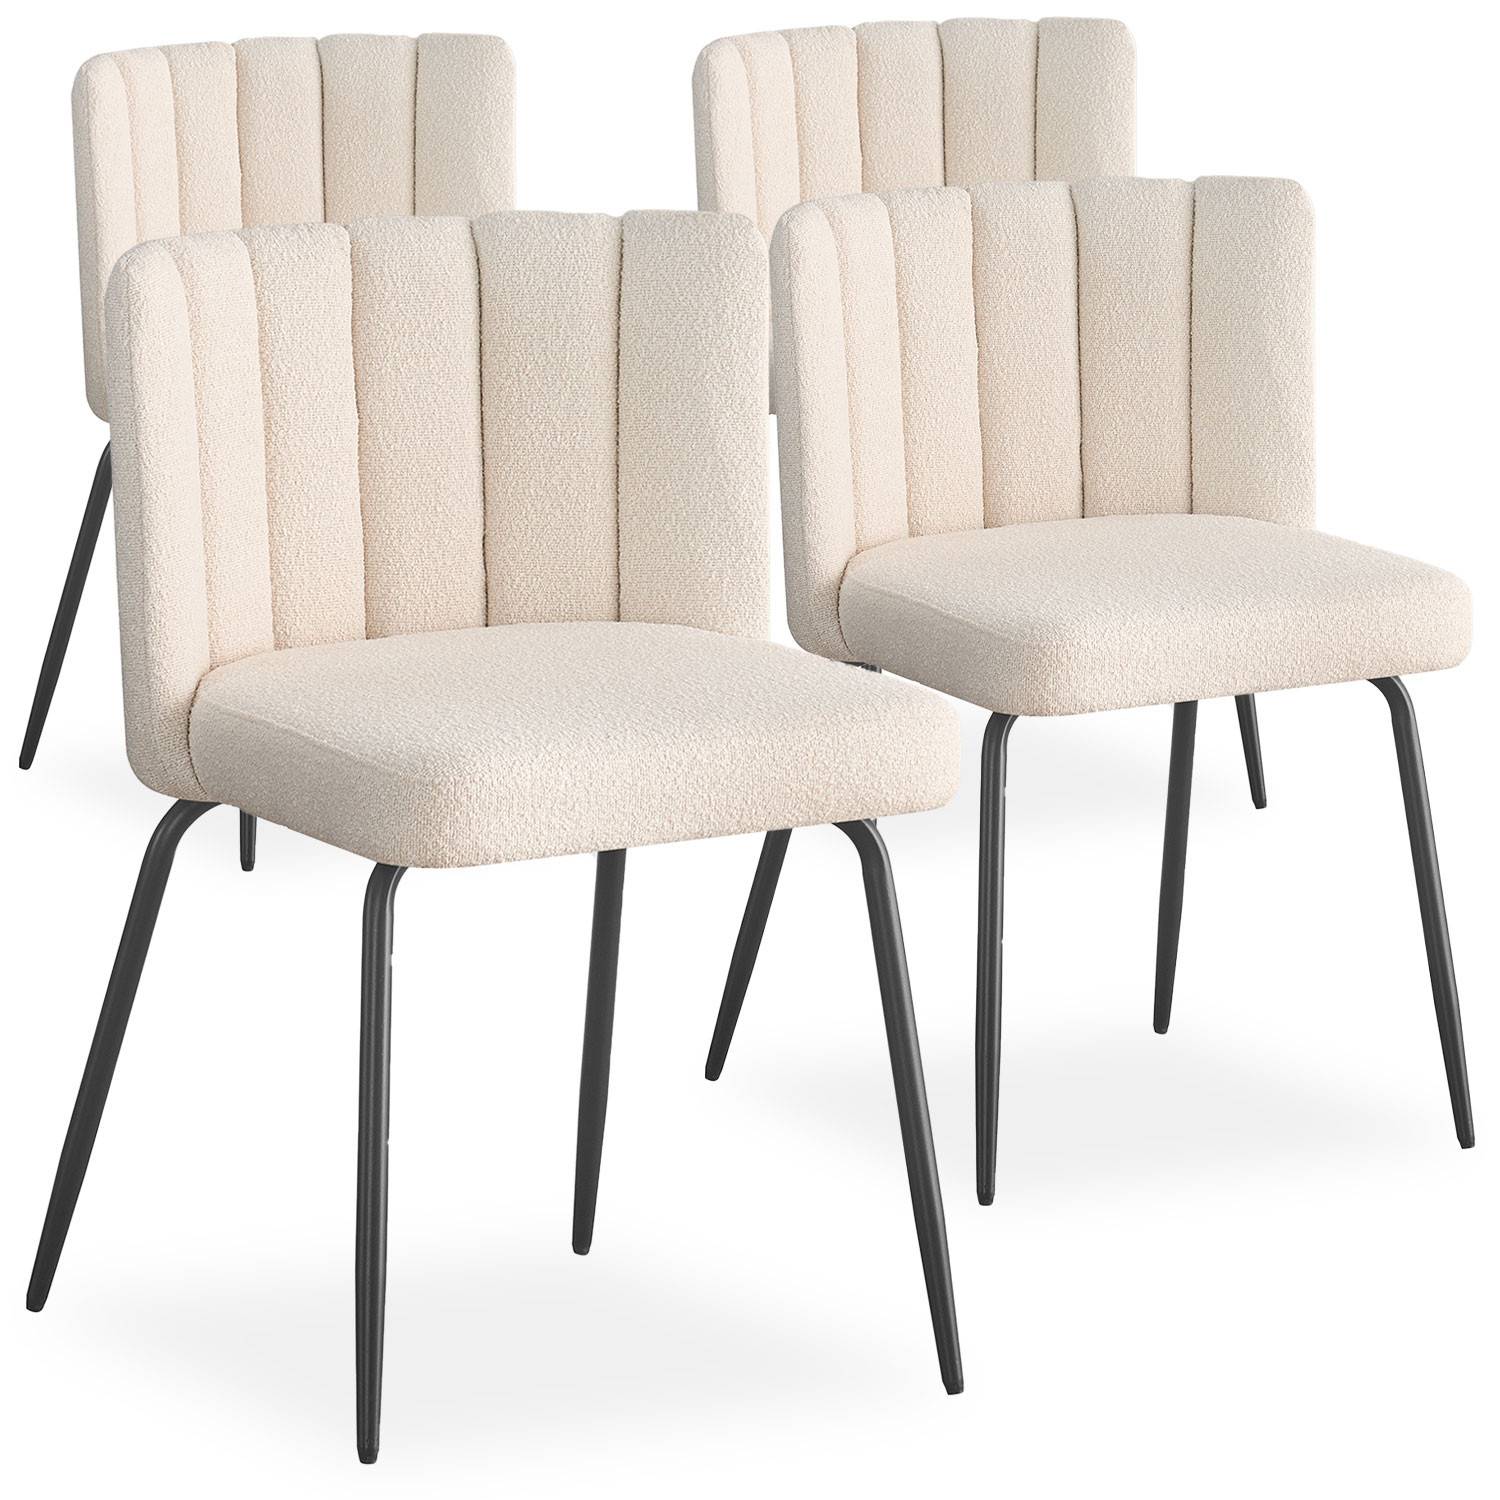 Lote de 4 sillas de diseño Sabine Tela efecto borrego crema